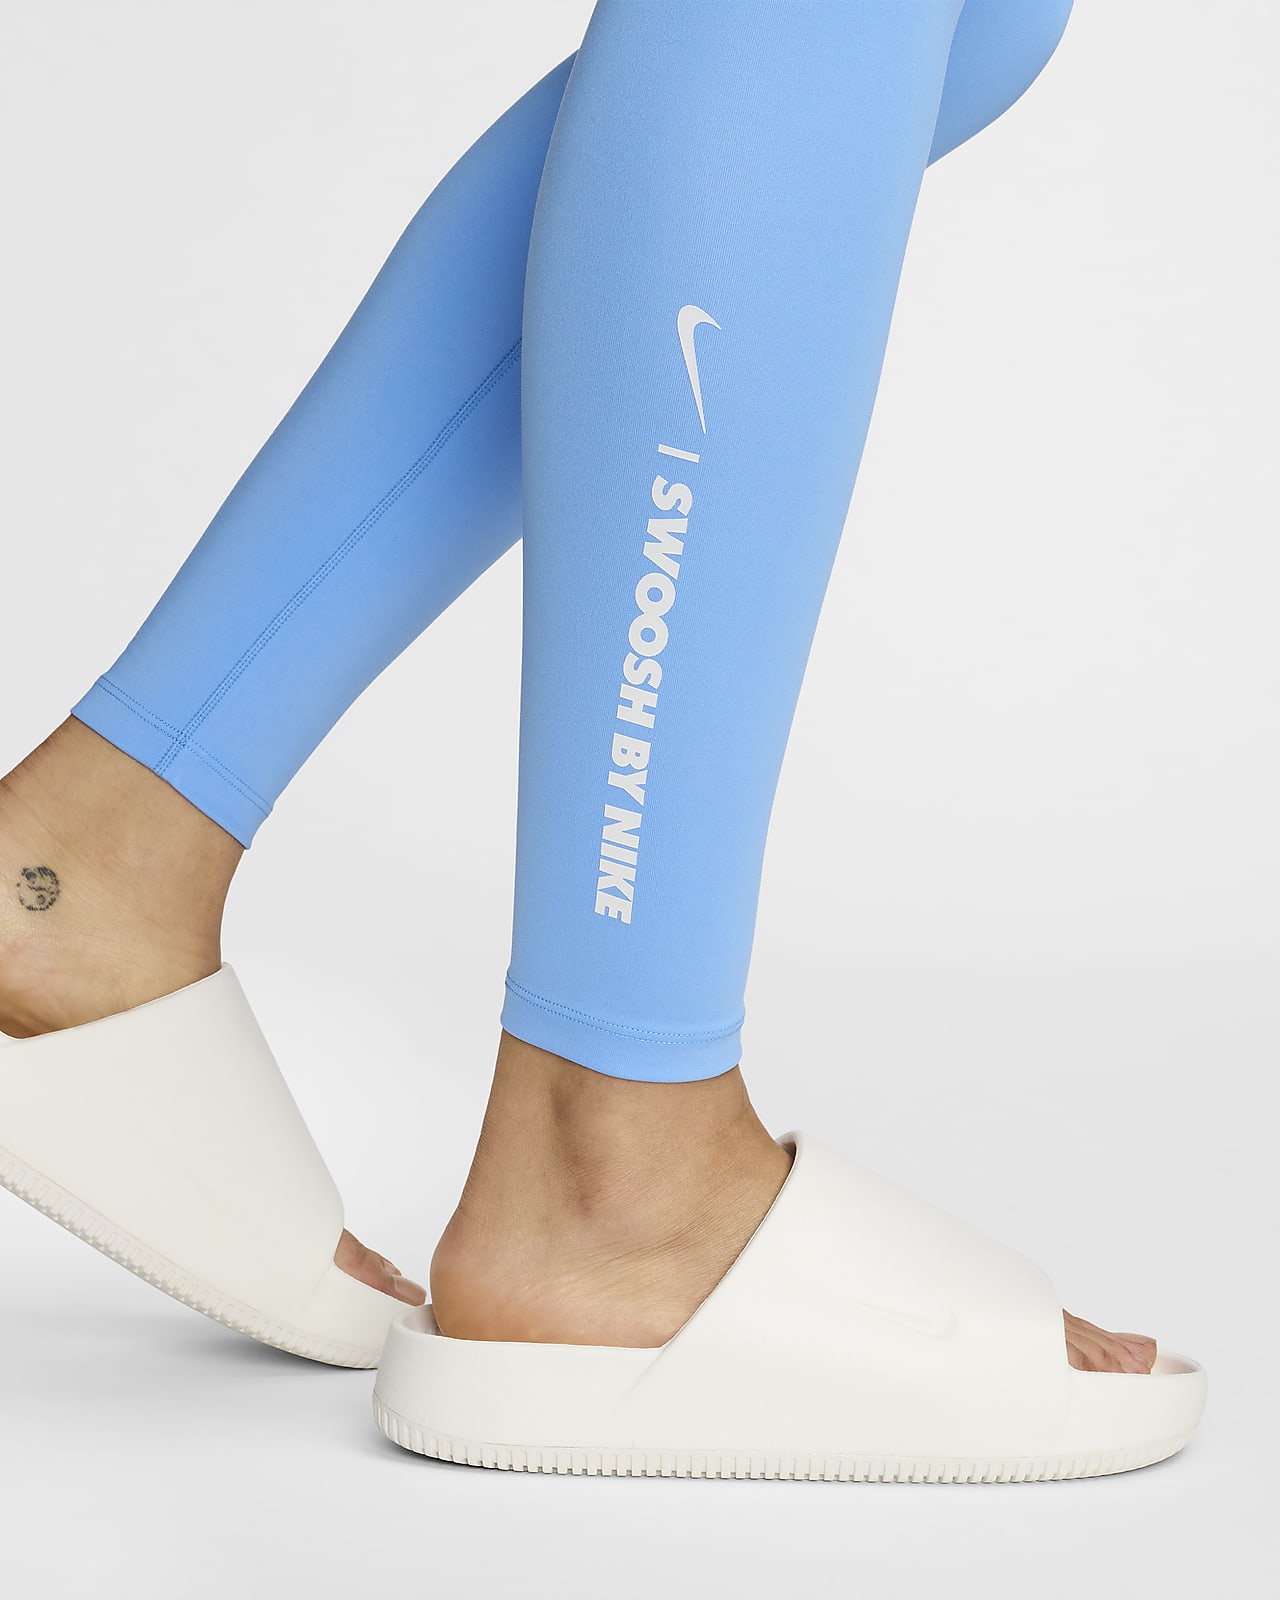 Nike One Women's High-Waisted Full-Length Leggings. Nike CA